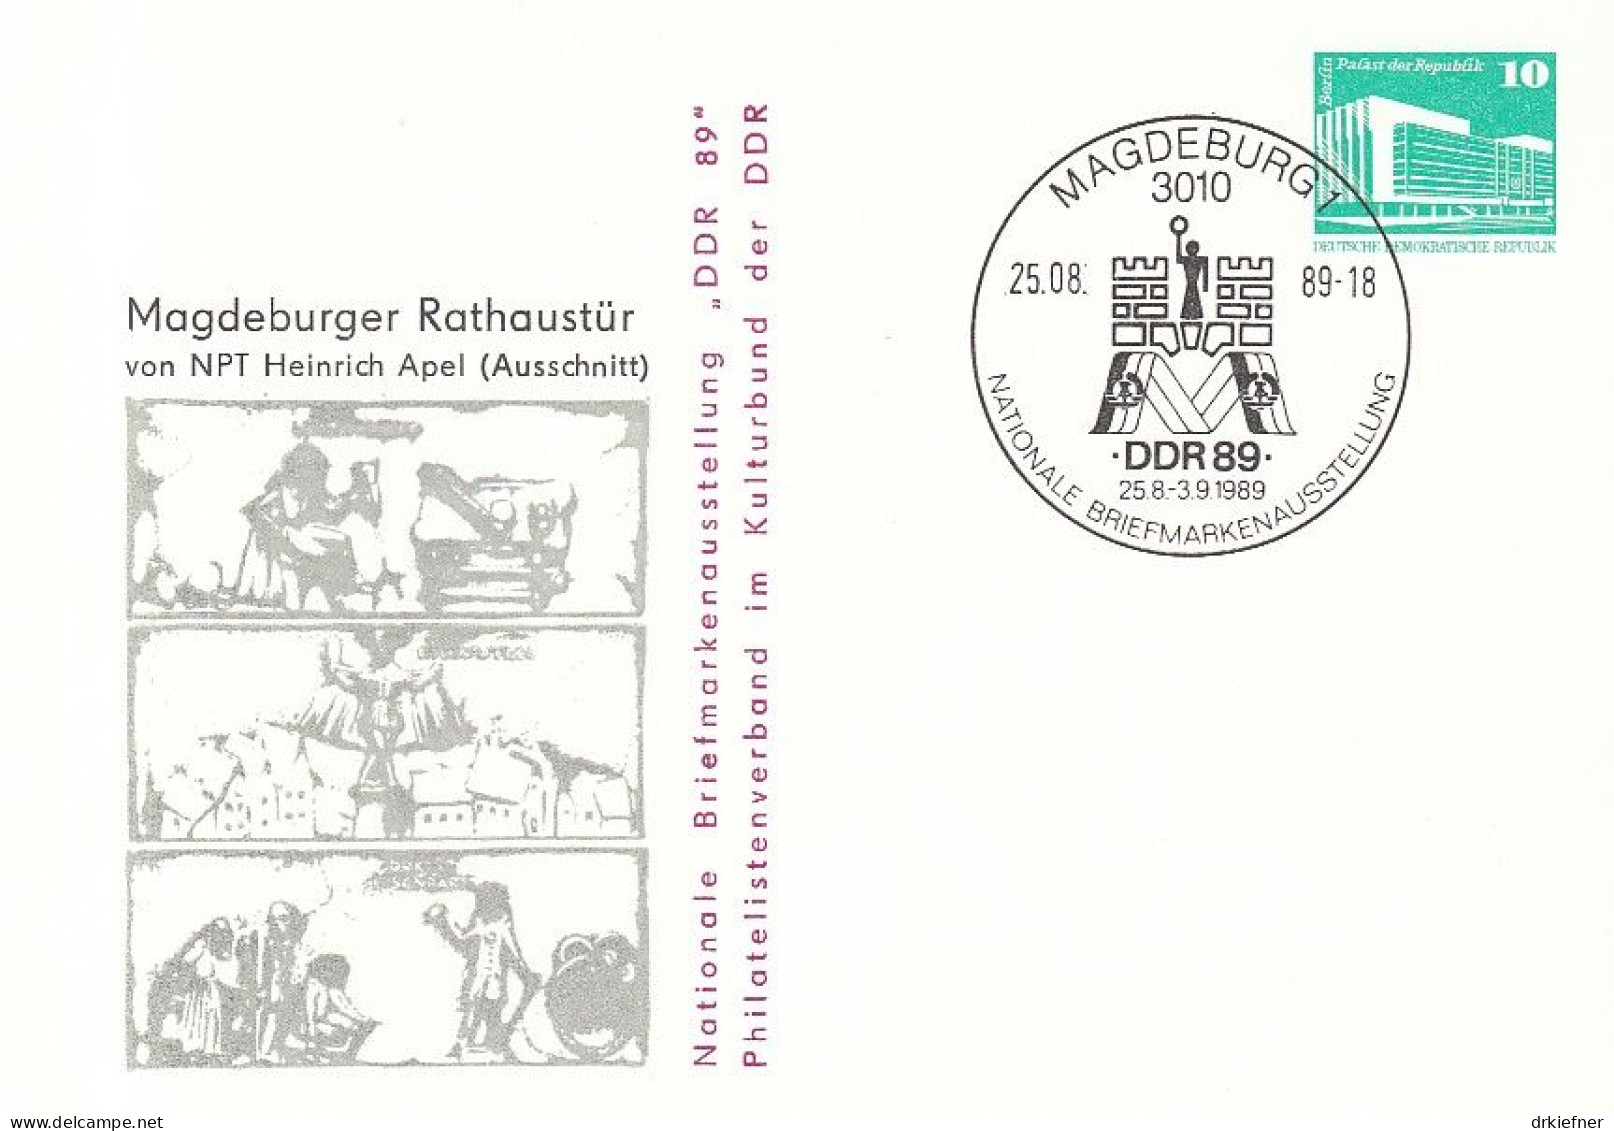 DDR PP 18, Gebraucht, SoSt: Magdeburg 25.8.89, Briefmarkenausstellung DDR '89, Magdeburger Rathaustür, 1989 - Privatpostkarten - Gebraucht